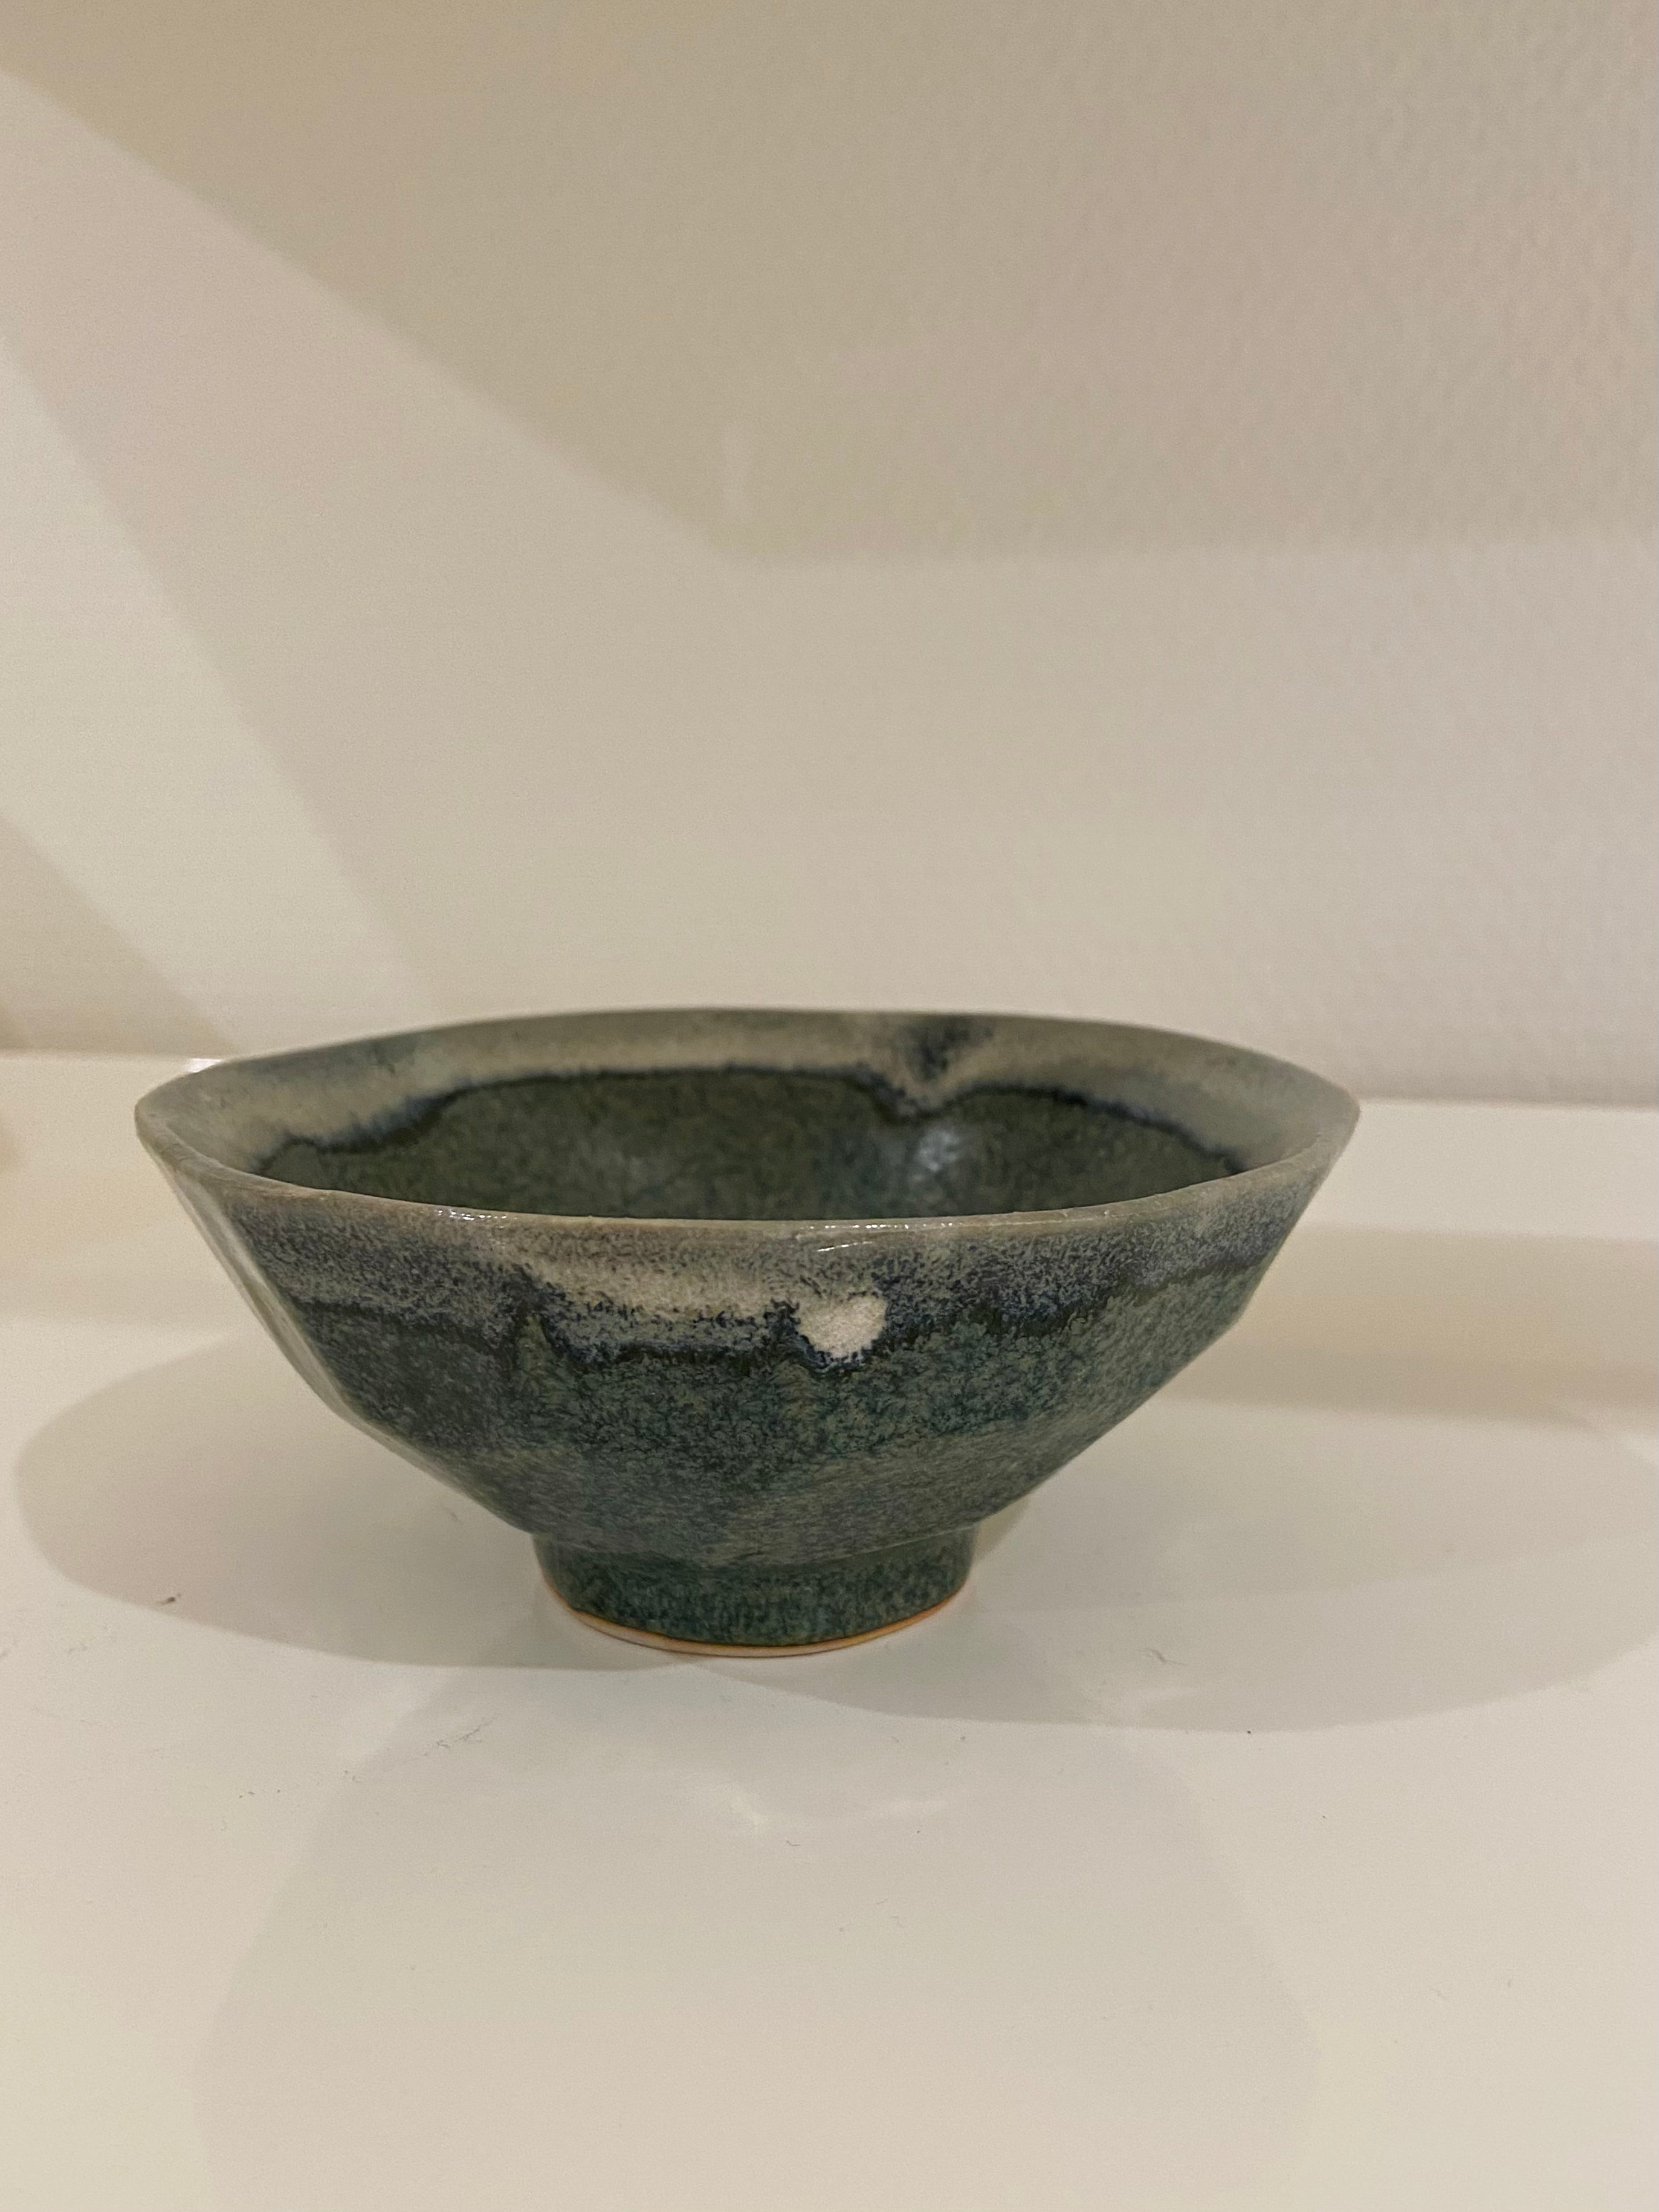 Angular bowl with blue/grey glaze